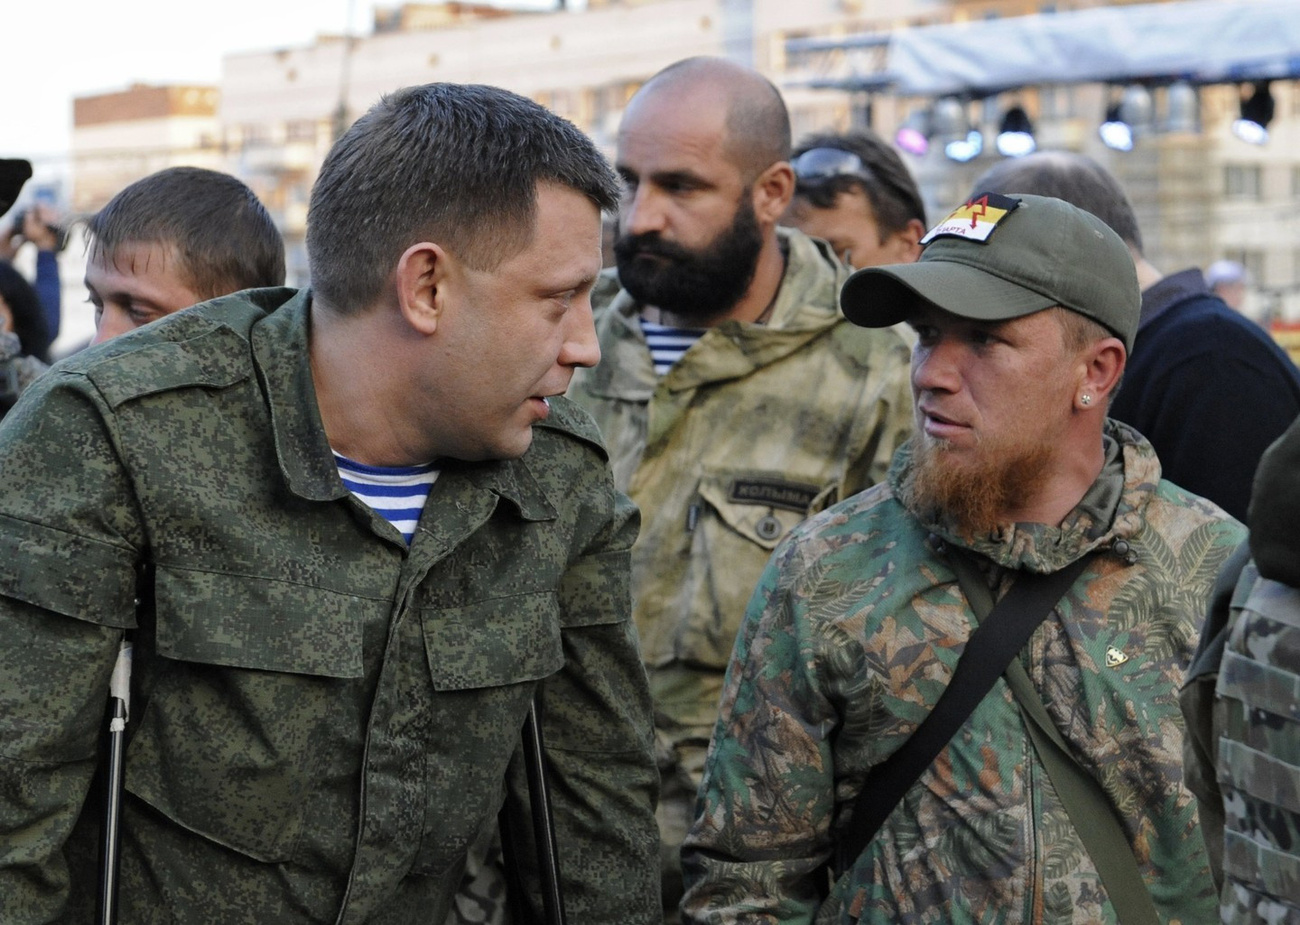 "Захарченко лично пытал и убивал пленных солдат ВСУ", - эксперт о плане ликвидации главного боевика Донецка